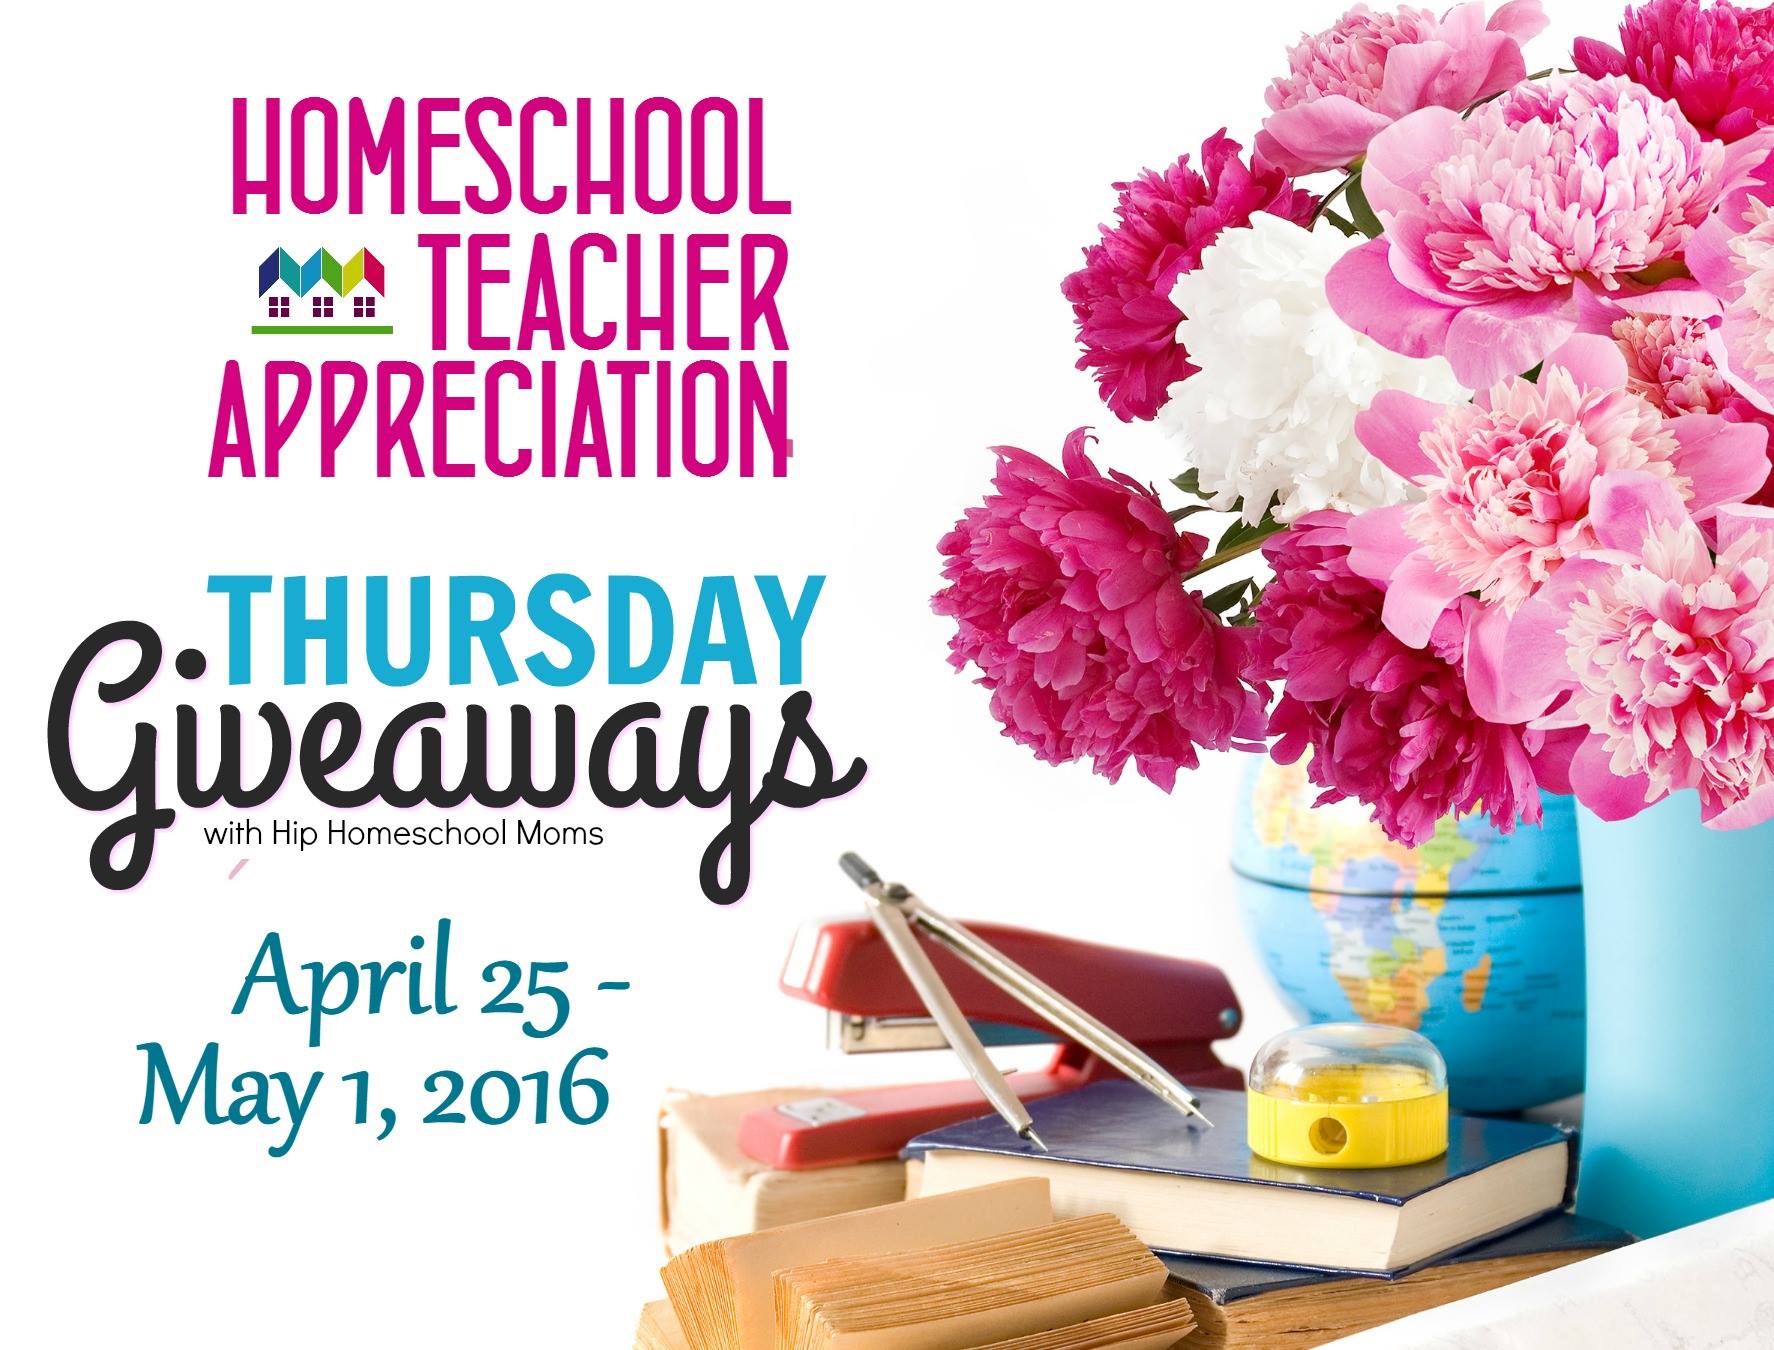 Thursday’s Giveaways for Homeschool Teacher Appreciation Week